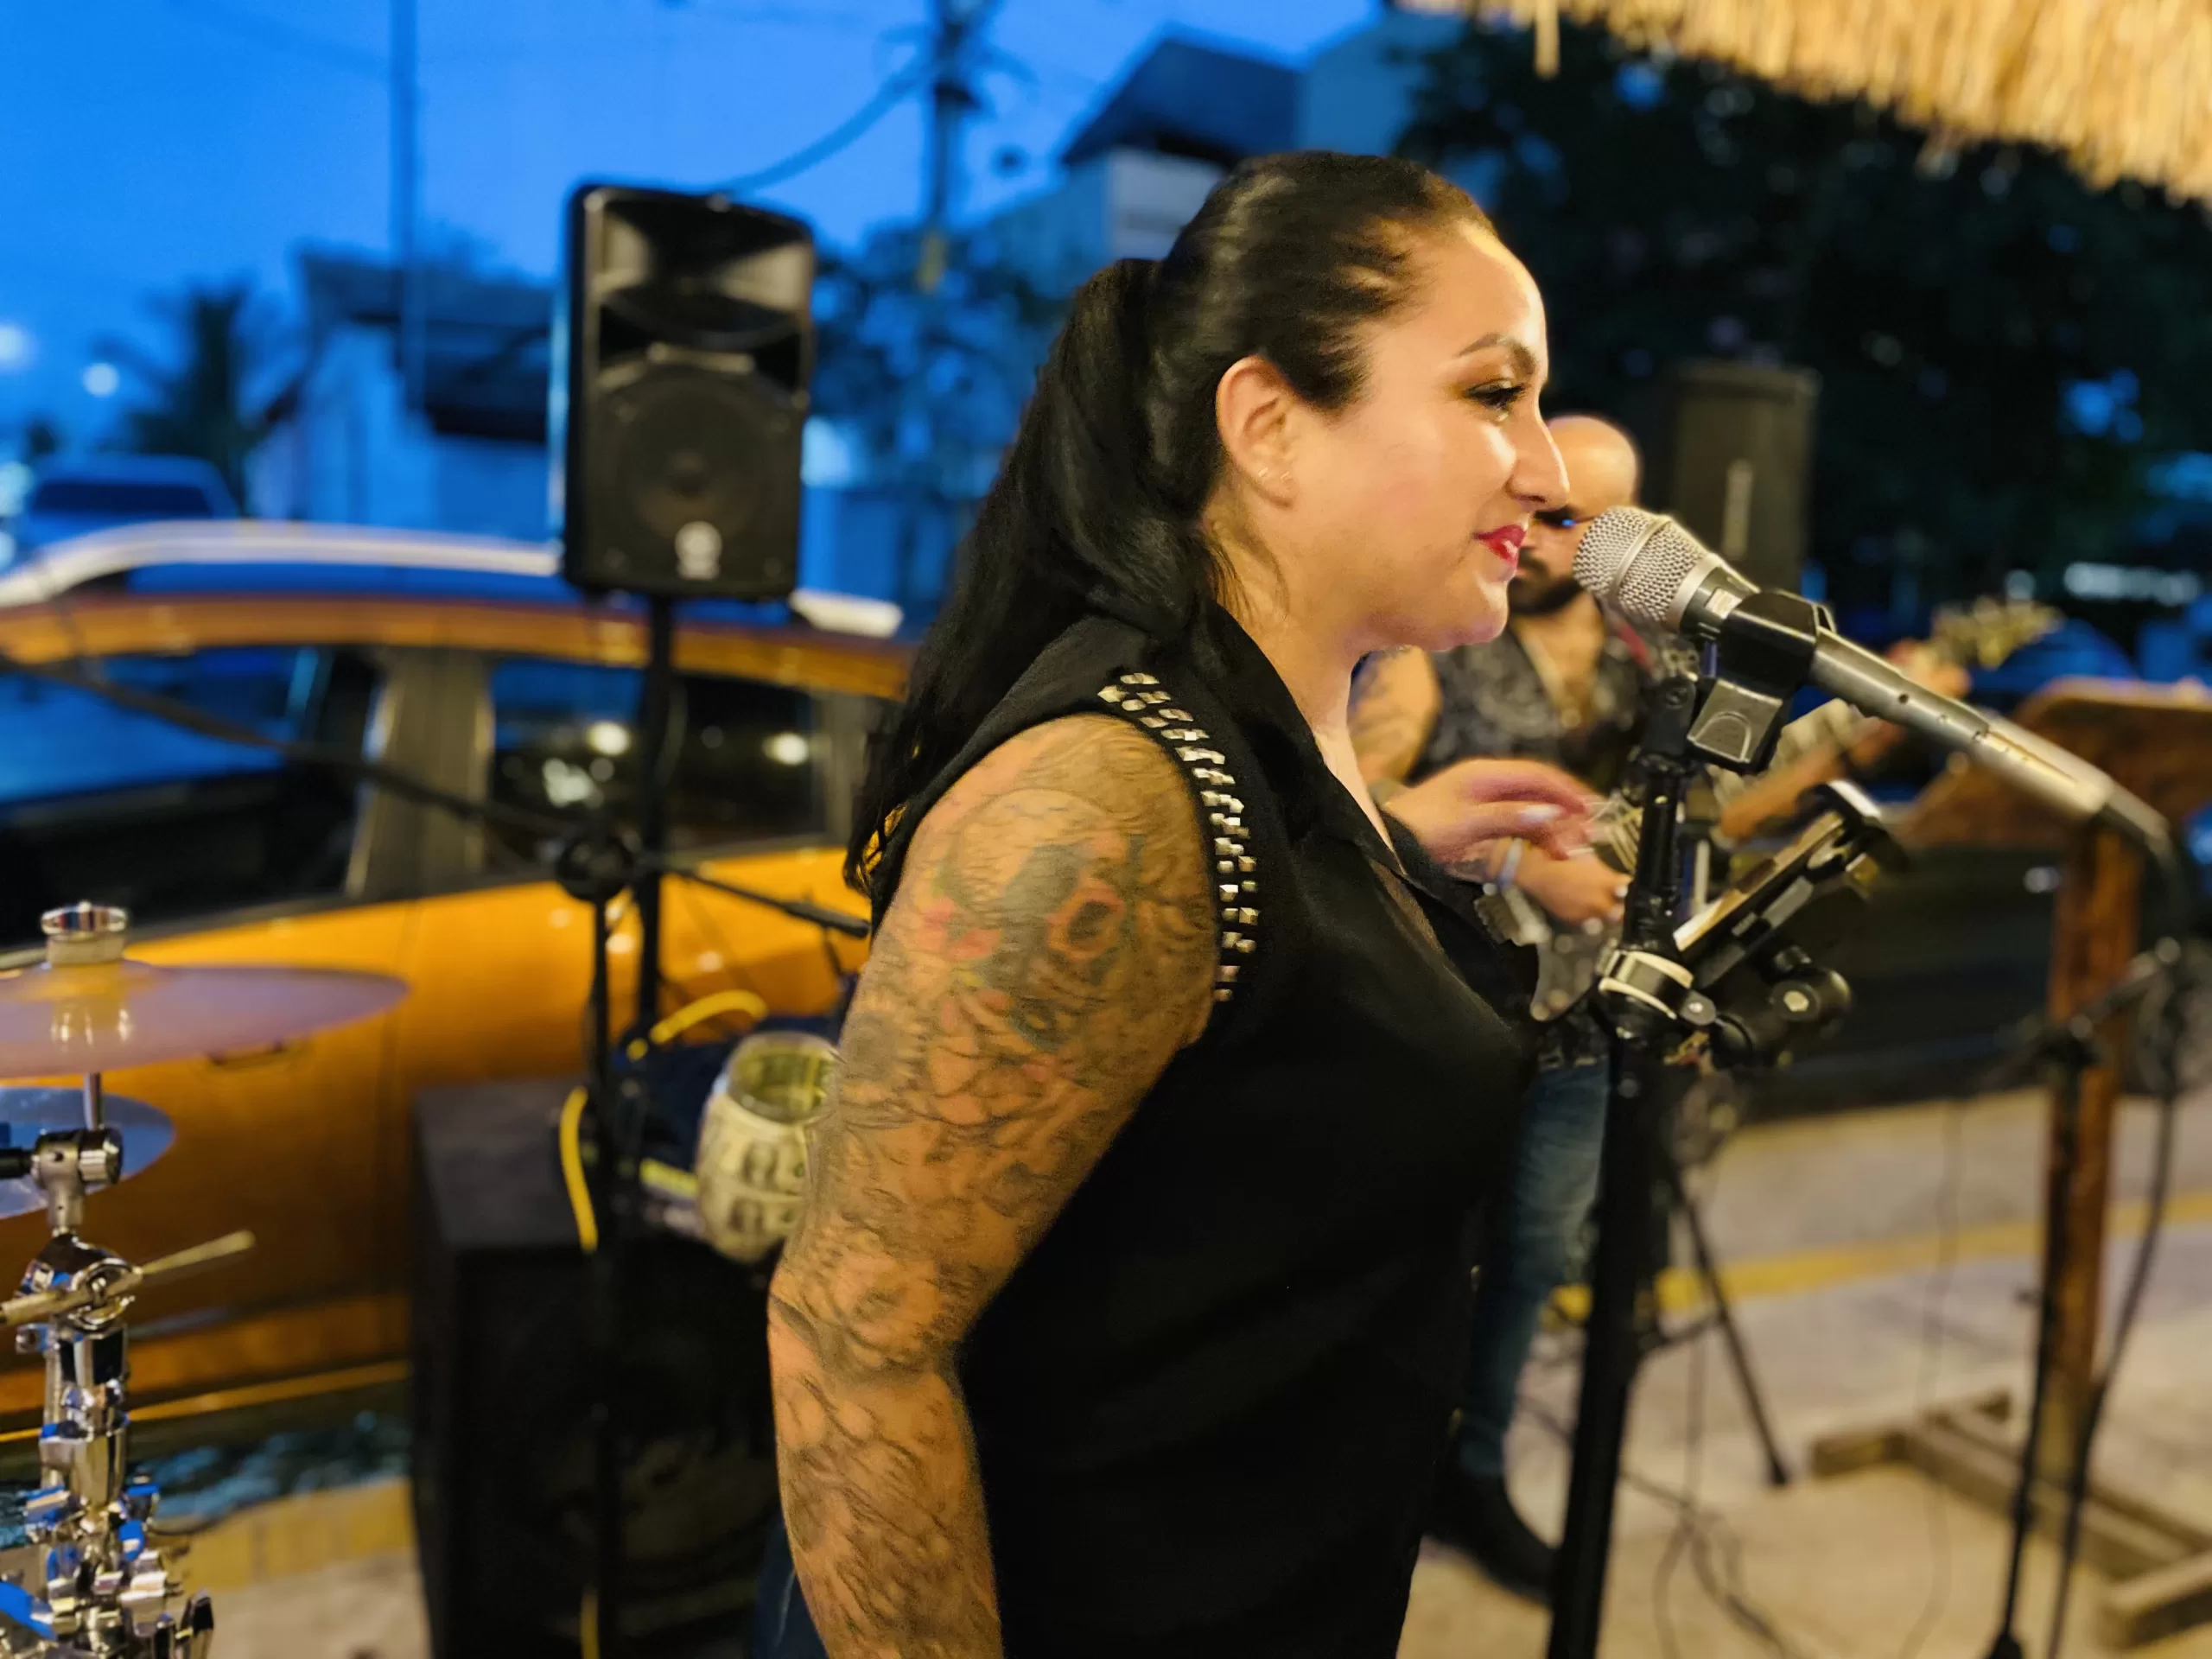 Female singer performing outside La Choza del Puerto.